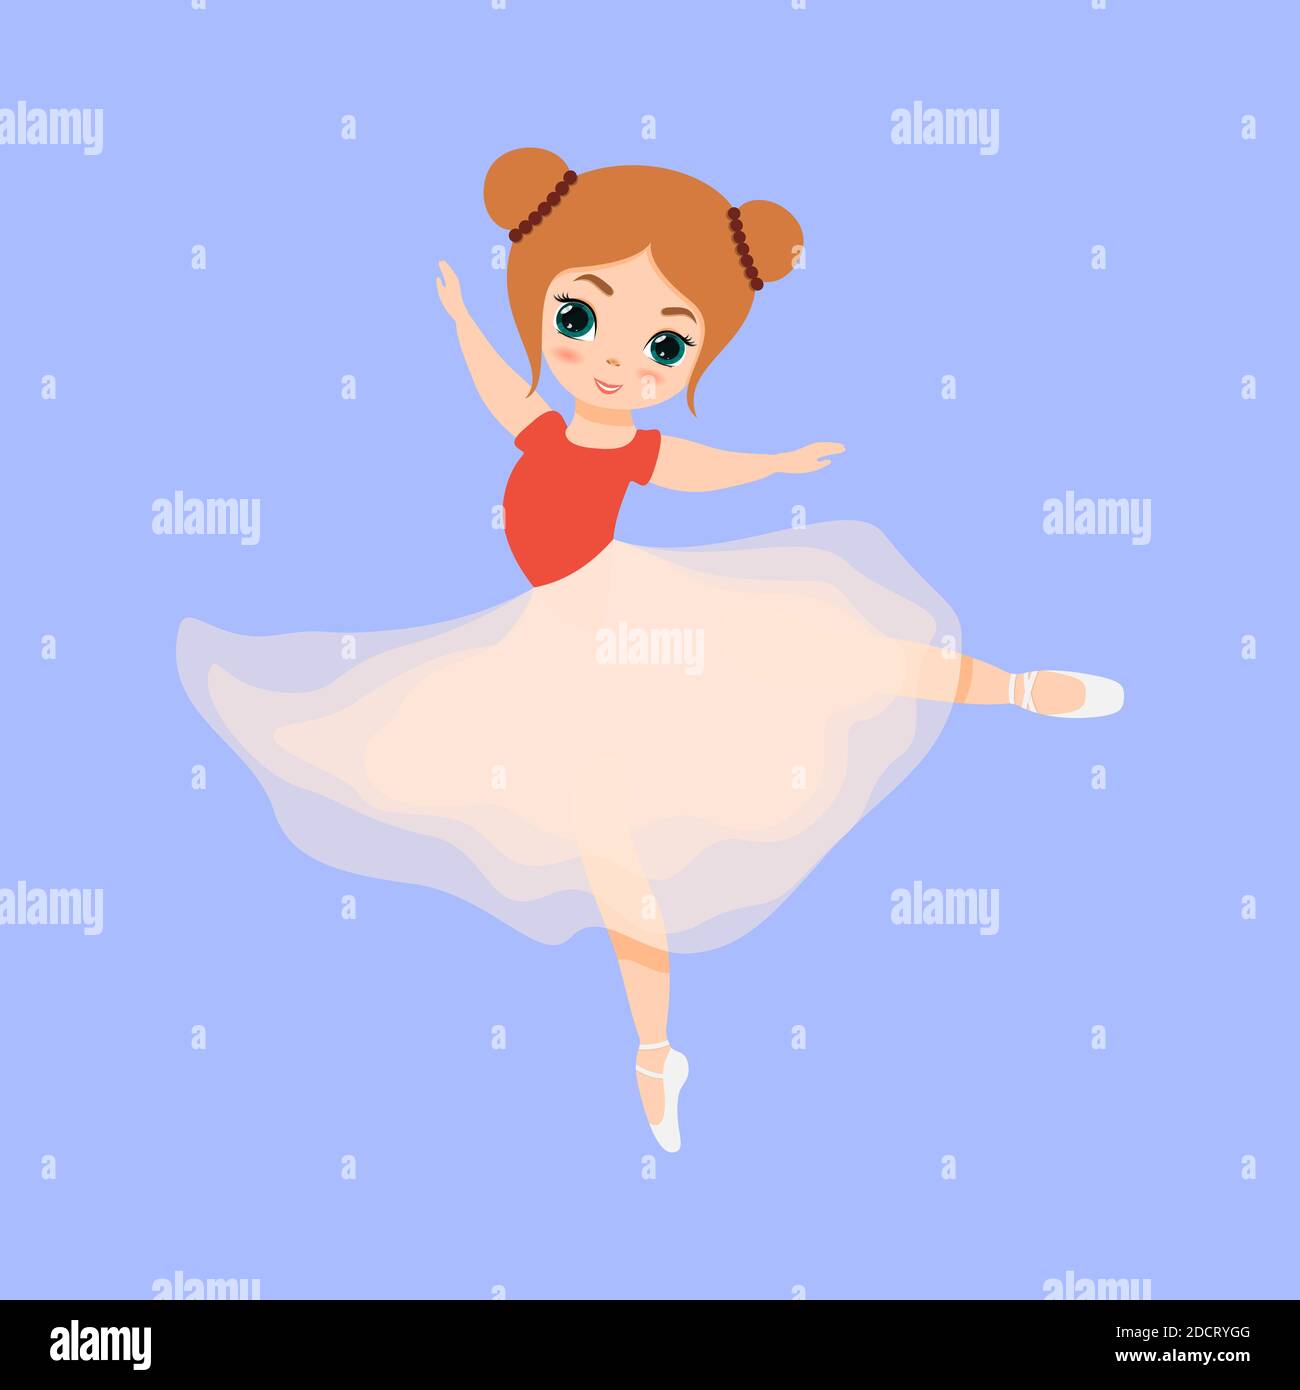 Jolie petite ballerine dansant. Ballerina fille en robe tutu rose. Belle illustration de dessin animé à plat pour enfant isolée sur fond bleu. Illustration de Vecteur